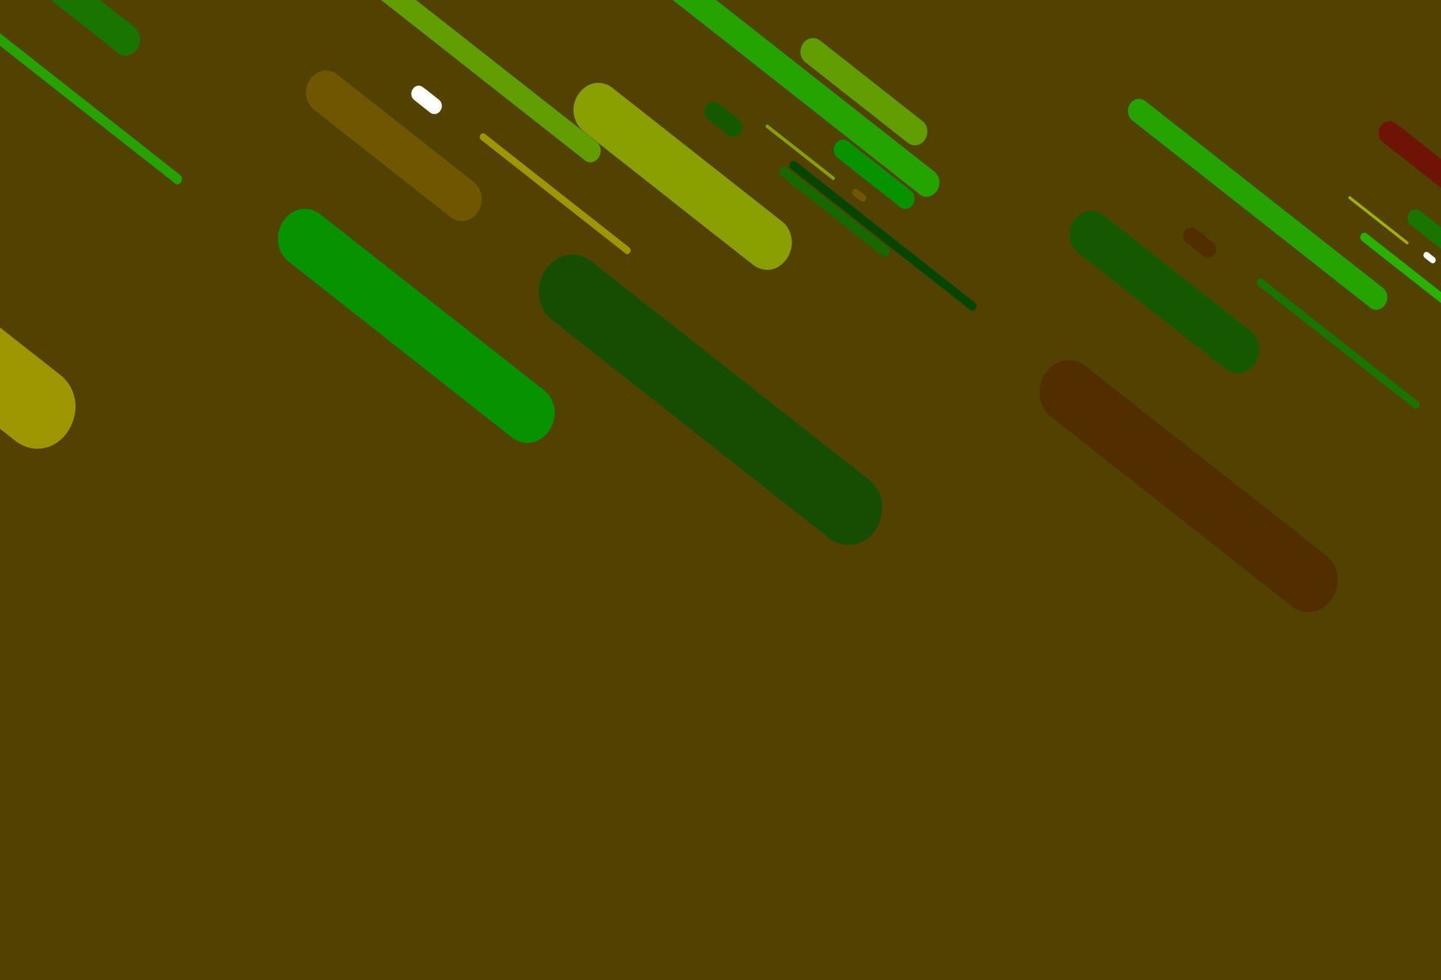 modelo de vetor verde claro e vermelho com varas repetidas.